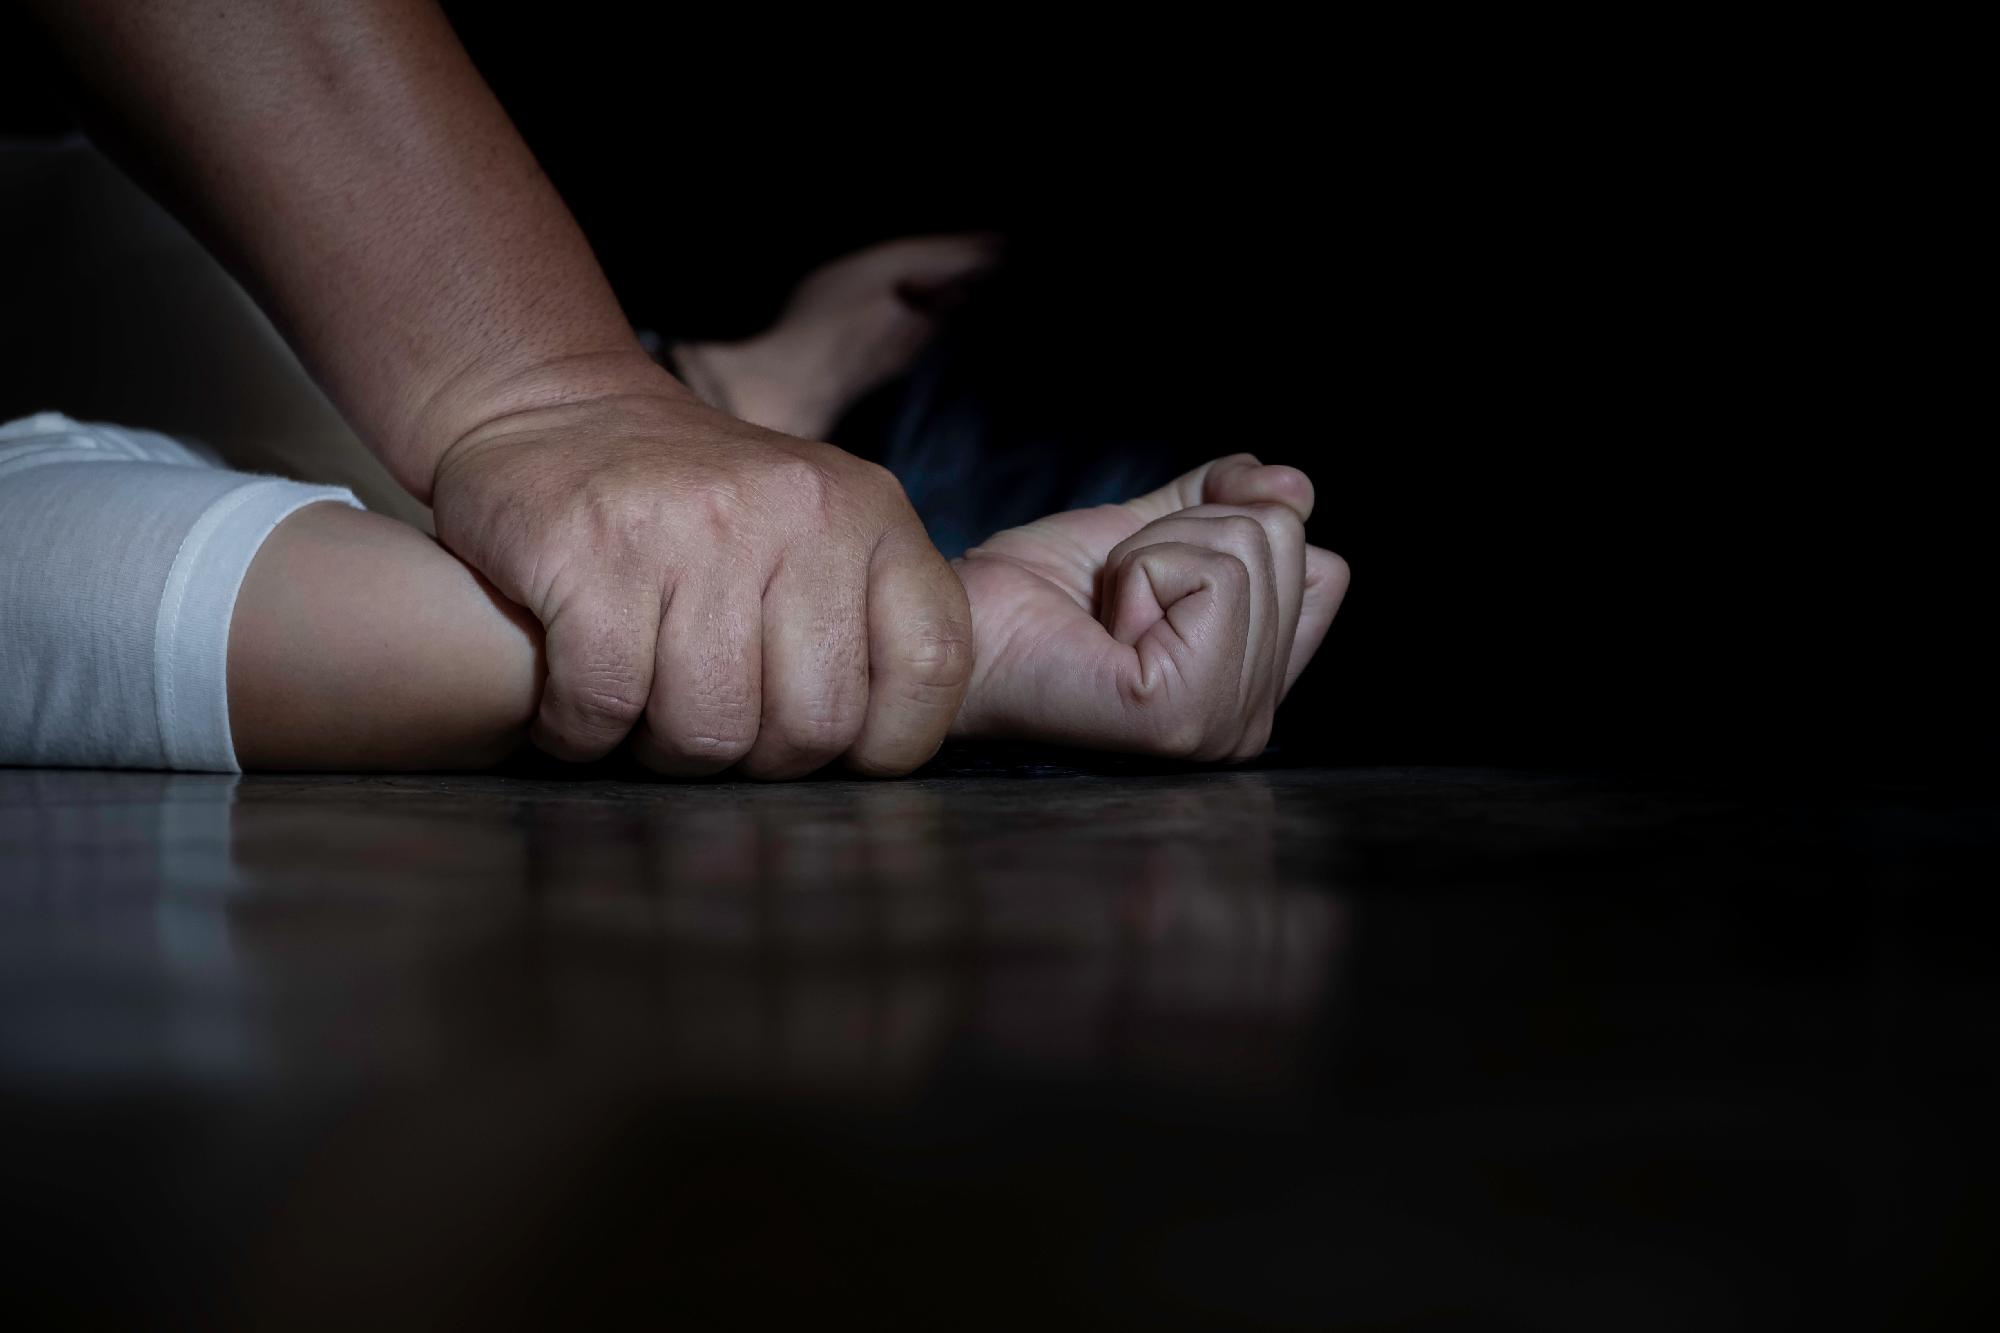 Migránsok erőszakoltak meg egy 12 éves kislányt